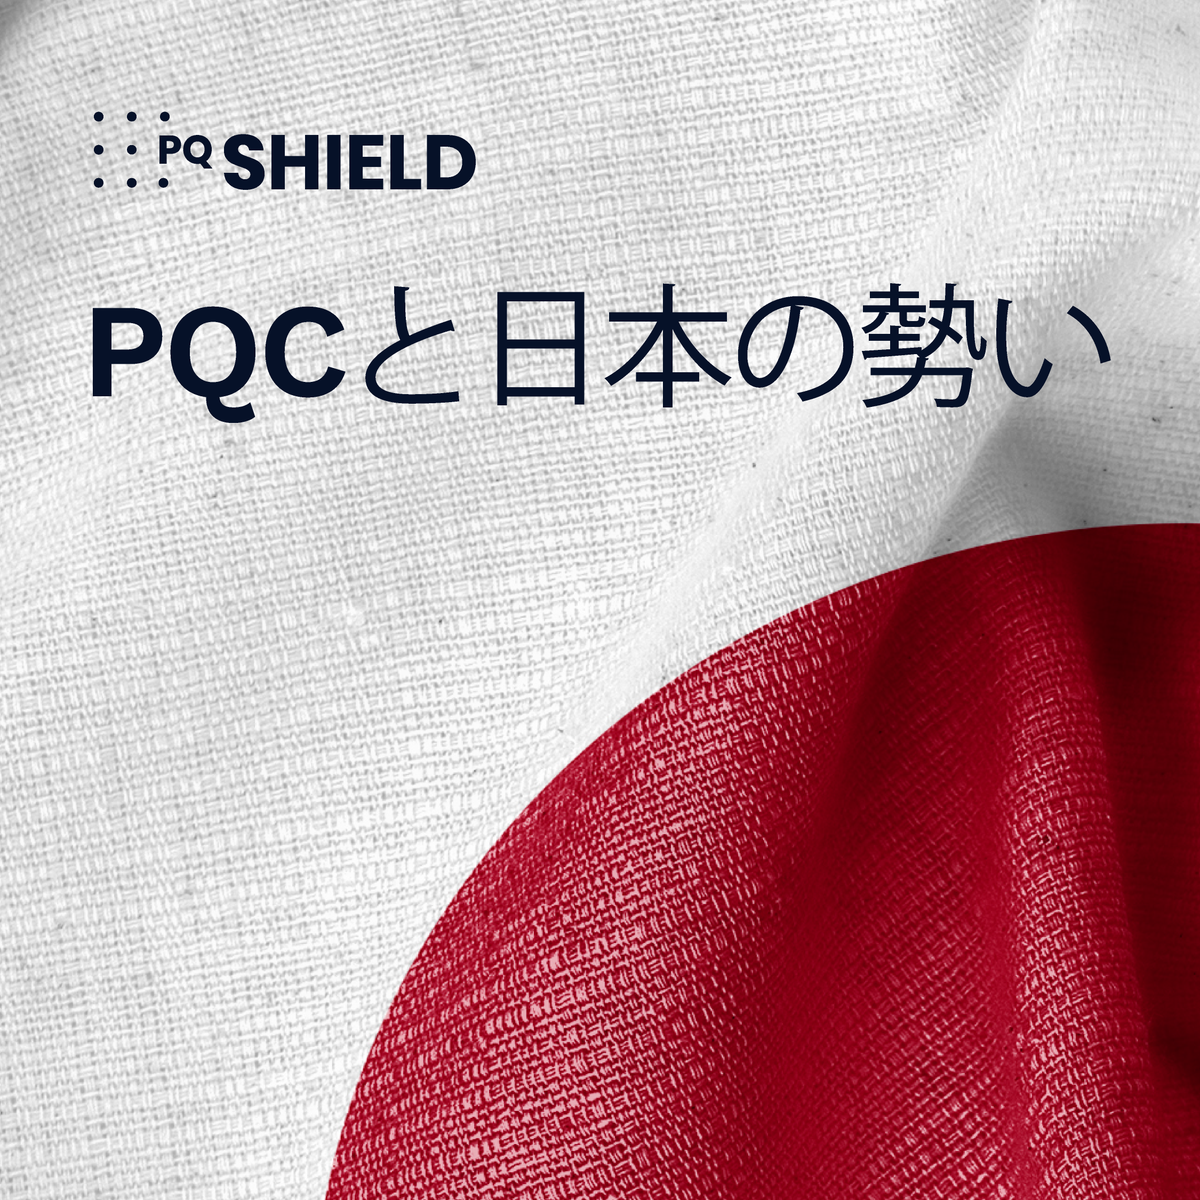 パートナーであるイントラリンクにサポートいただき、ミライズテクノロジーズ(@Toyota__japan & @DENSO_Corp)、@Sumitomo_s_m、@NTTDATAといった日本の#PQCのお客様にお会いするために日本を訪問しました。 ぜひ、暗号技術ガイドの日本語版もご覧ください hubs.li/Q02sD2y_0